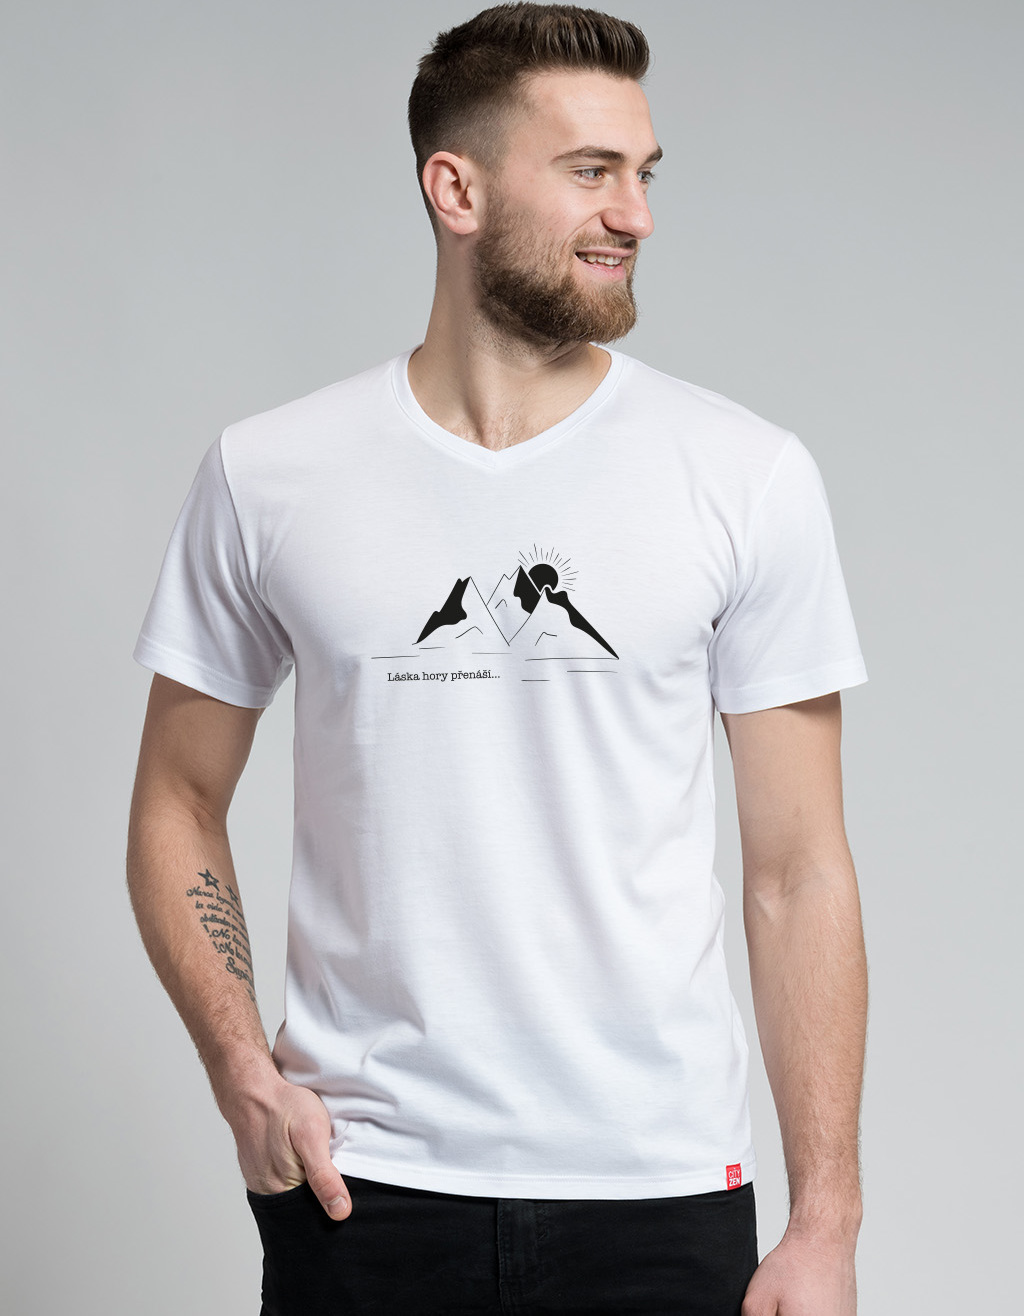 Pánské bavlněné tričko CITYZEN bílé Láska hory přenáší Velikost: XXL